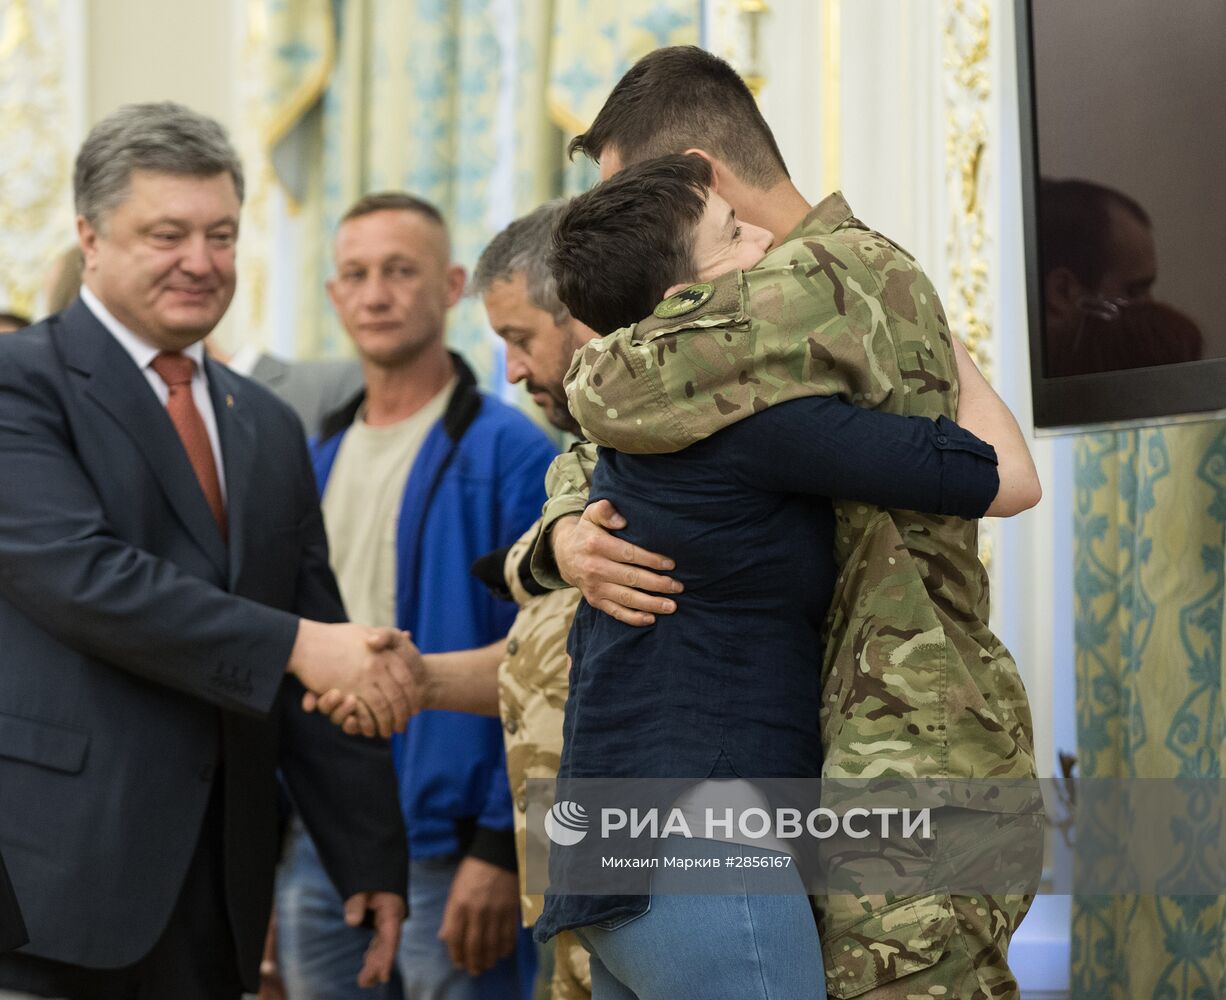 Президент Украины П. Порошенко вручил Н. Савченко орден "Золотой Звезды"